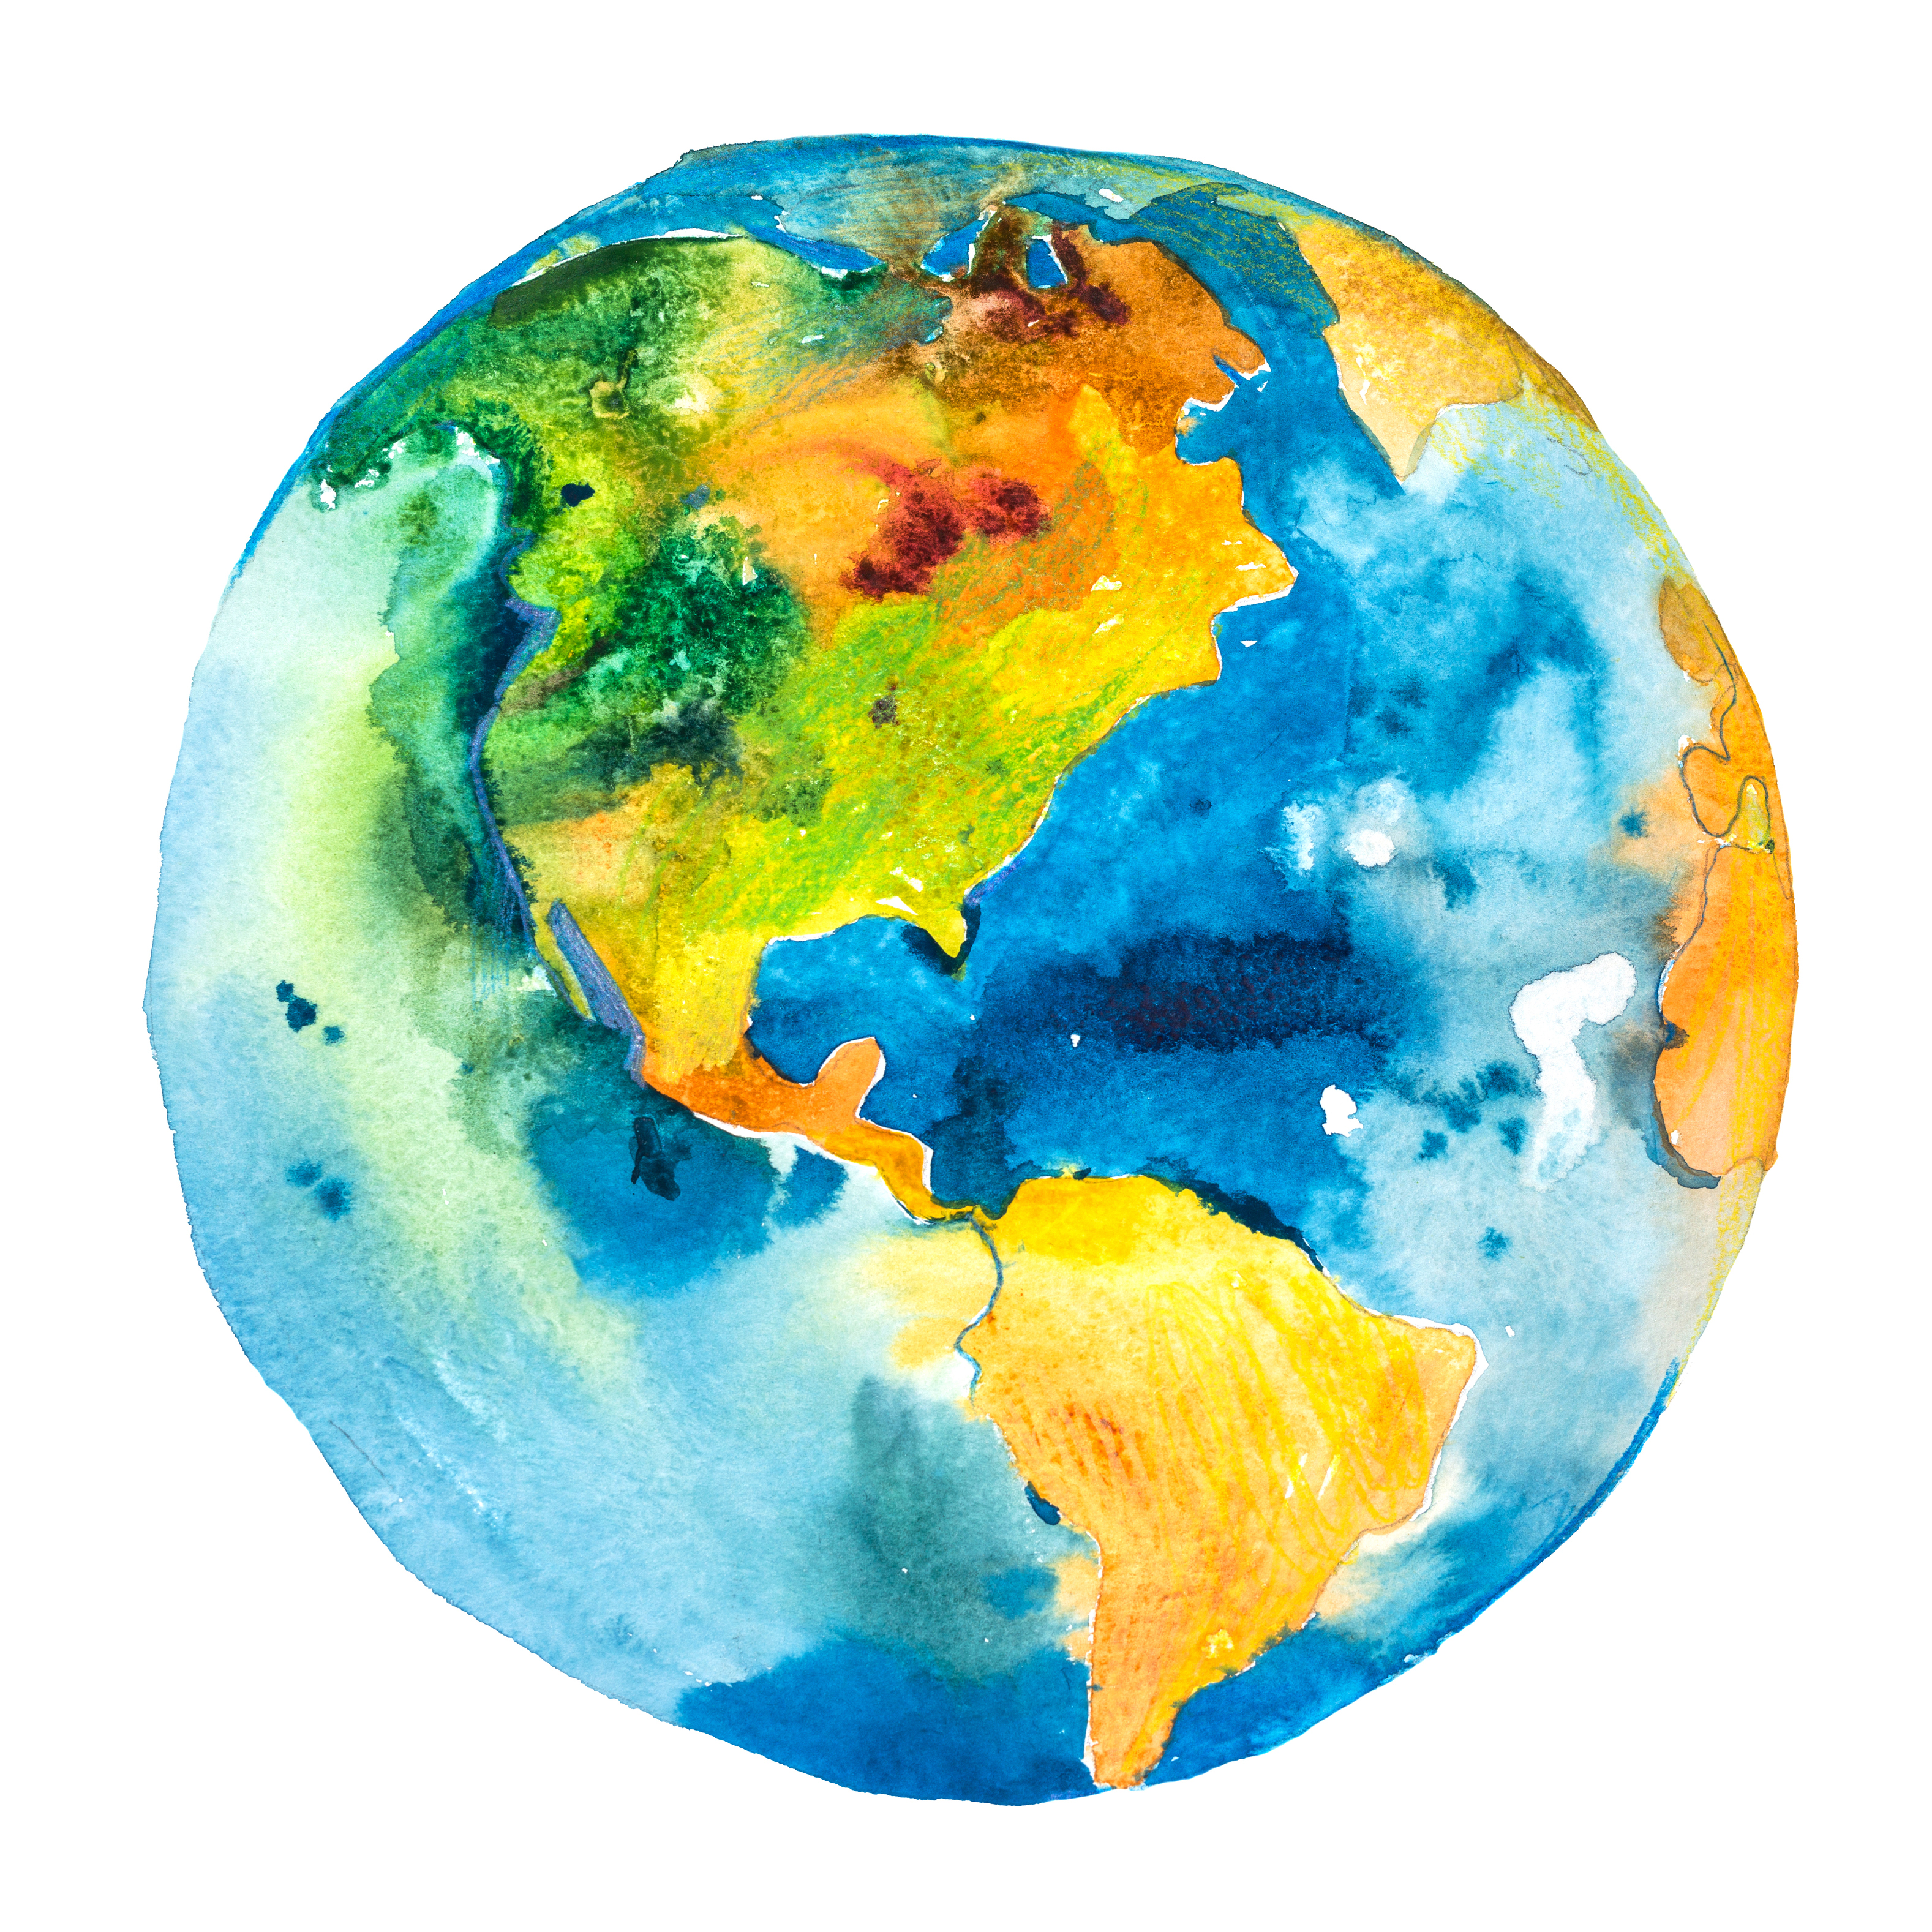 Watercolor of globe